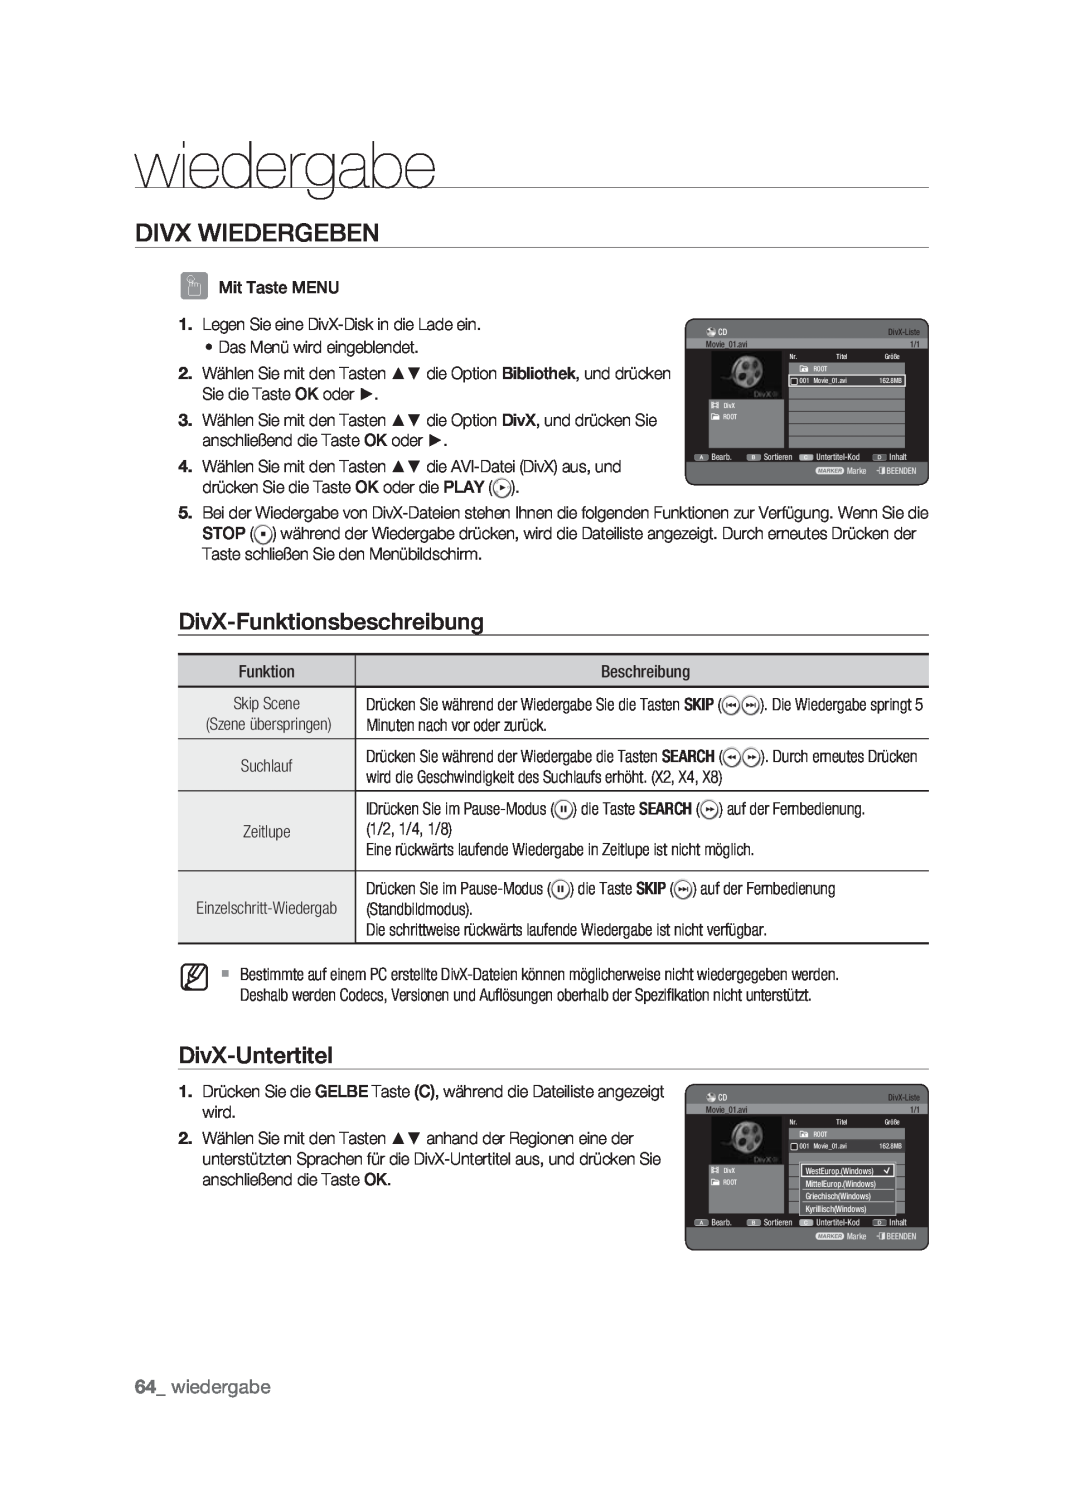 Samsung DVD-HR773/XEN, DVD-HR773/XEB manual Divx Wiedergeben, DivX-Funktionsbeschreibung, DivX-Untertitel, wiedergabe 